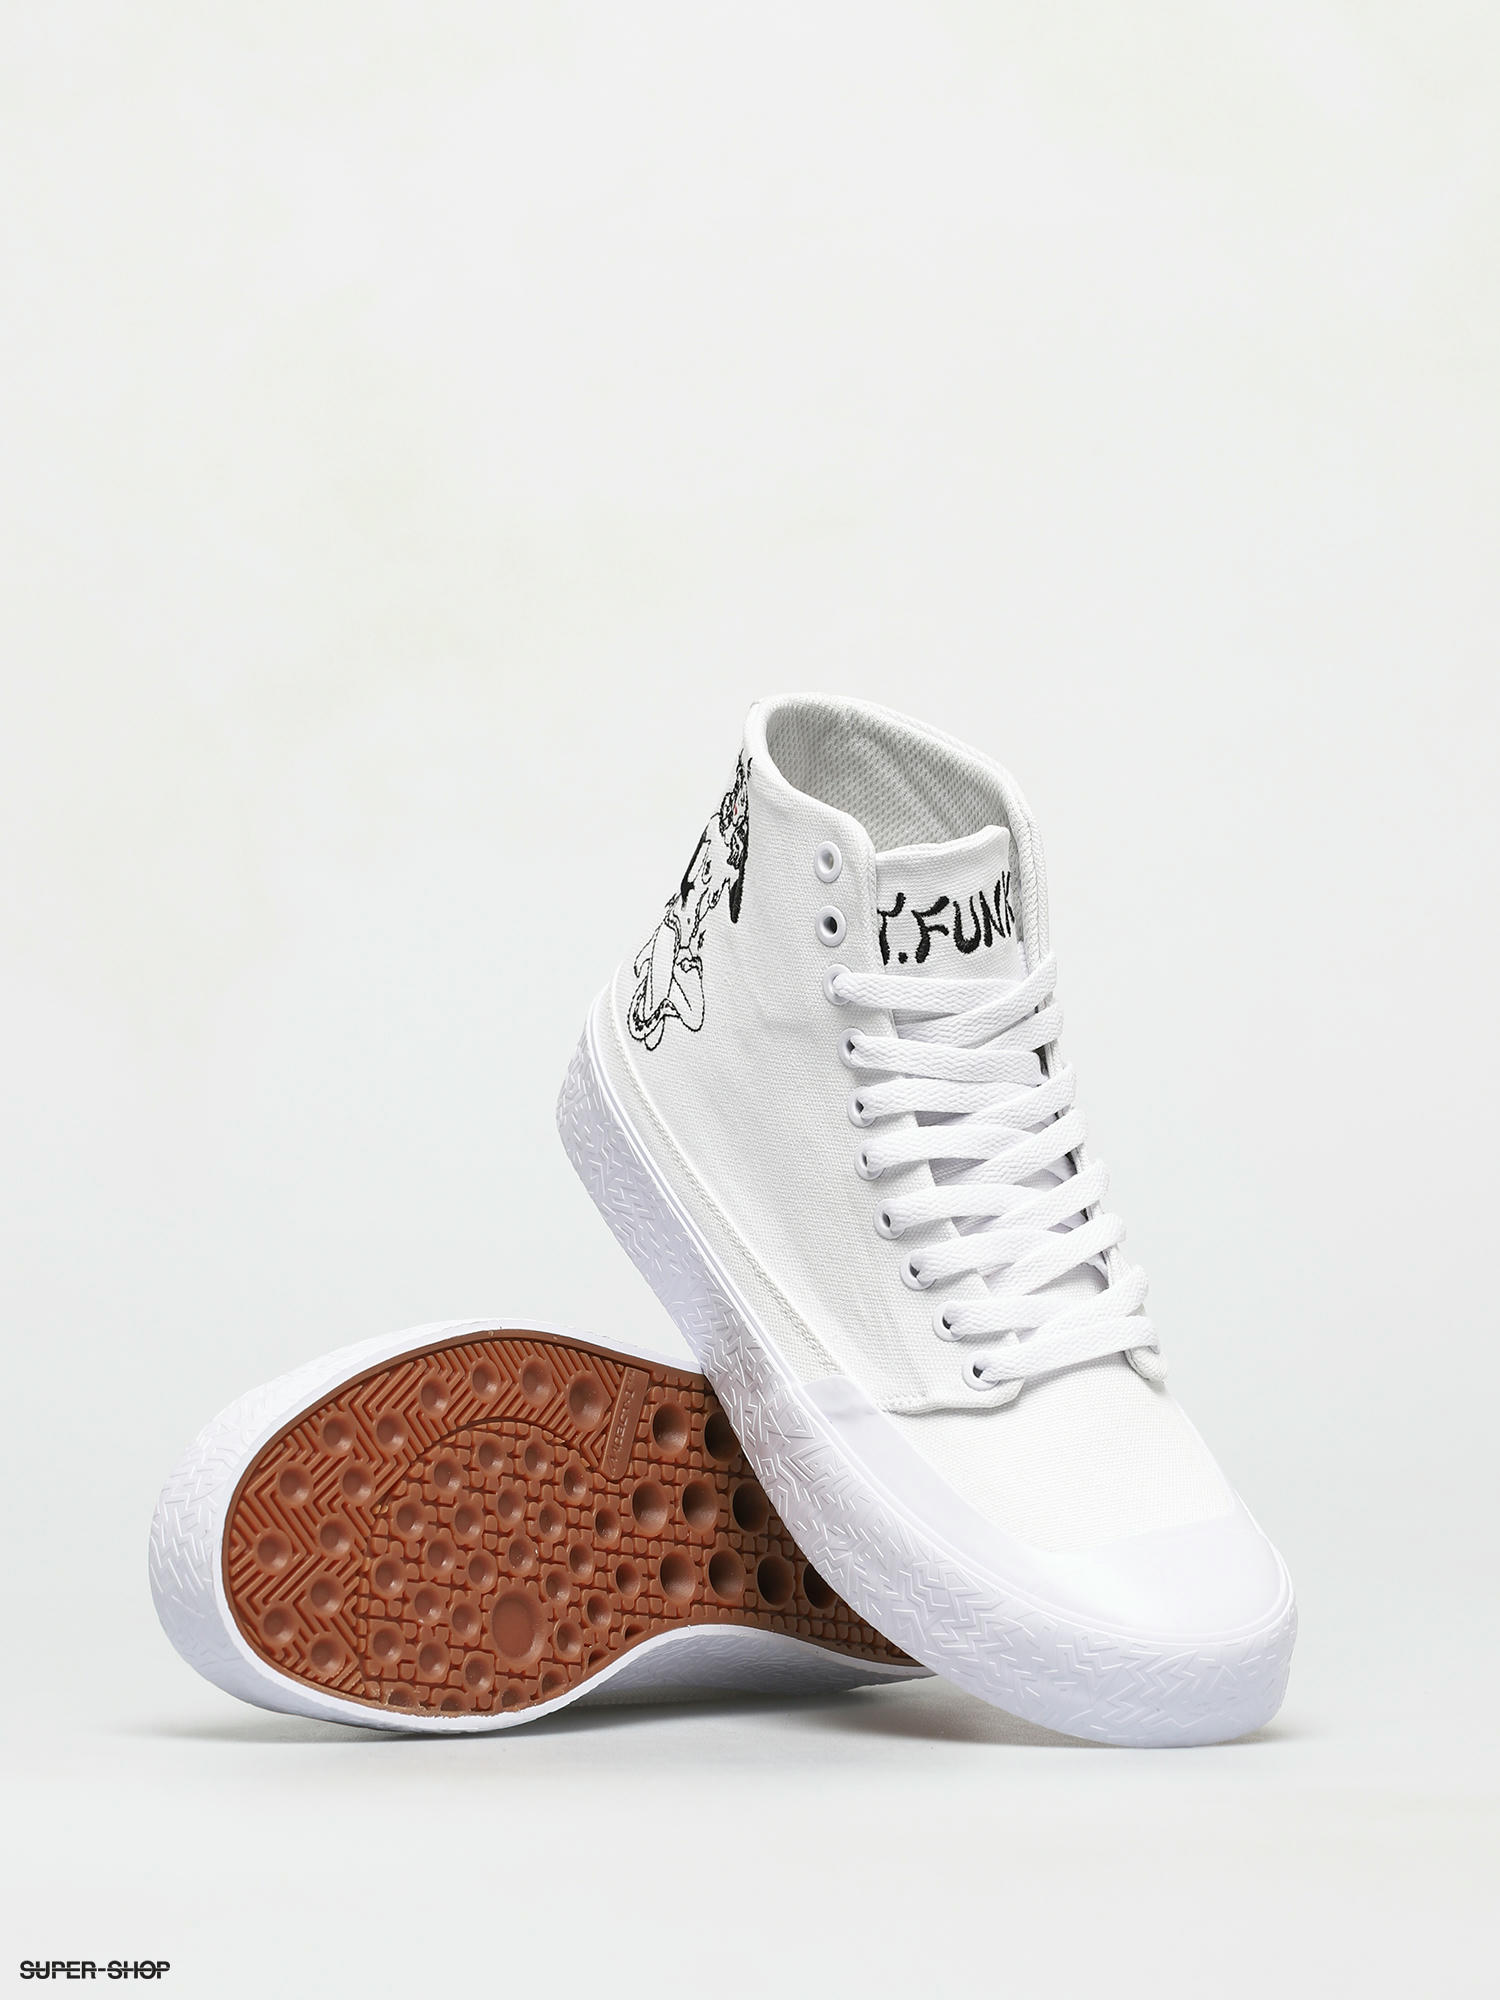 DC T Funk Hi S X Tati Shoes (white/black)